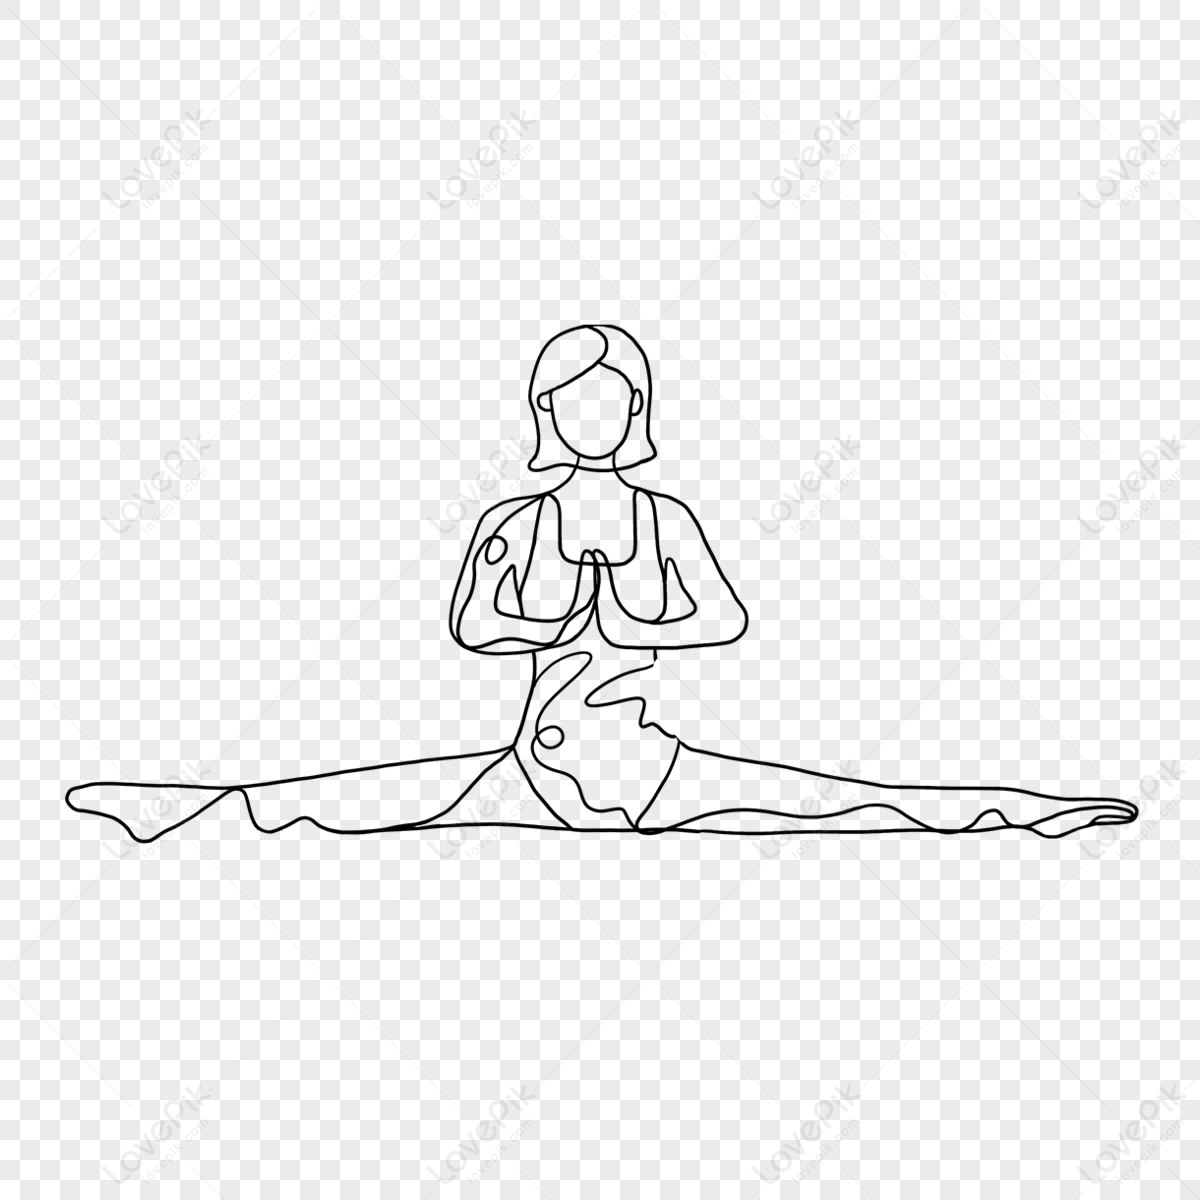 Yoga poses icons set. Yoga asanas silhouette symbols. Sarvangasana,  halasana, bakasana, uttanasana, siddhasana, vrikshasana, trikonasana,  virabhadrasa Stock Vector Image & Art - Alamy